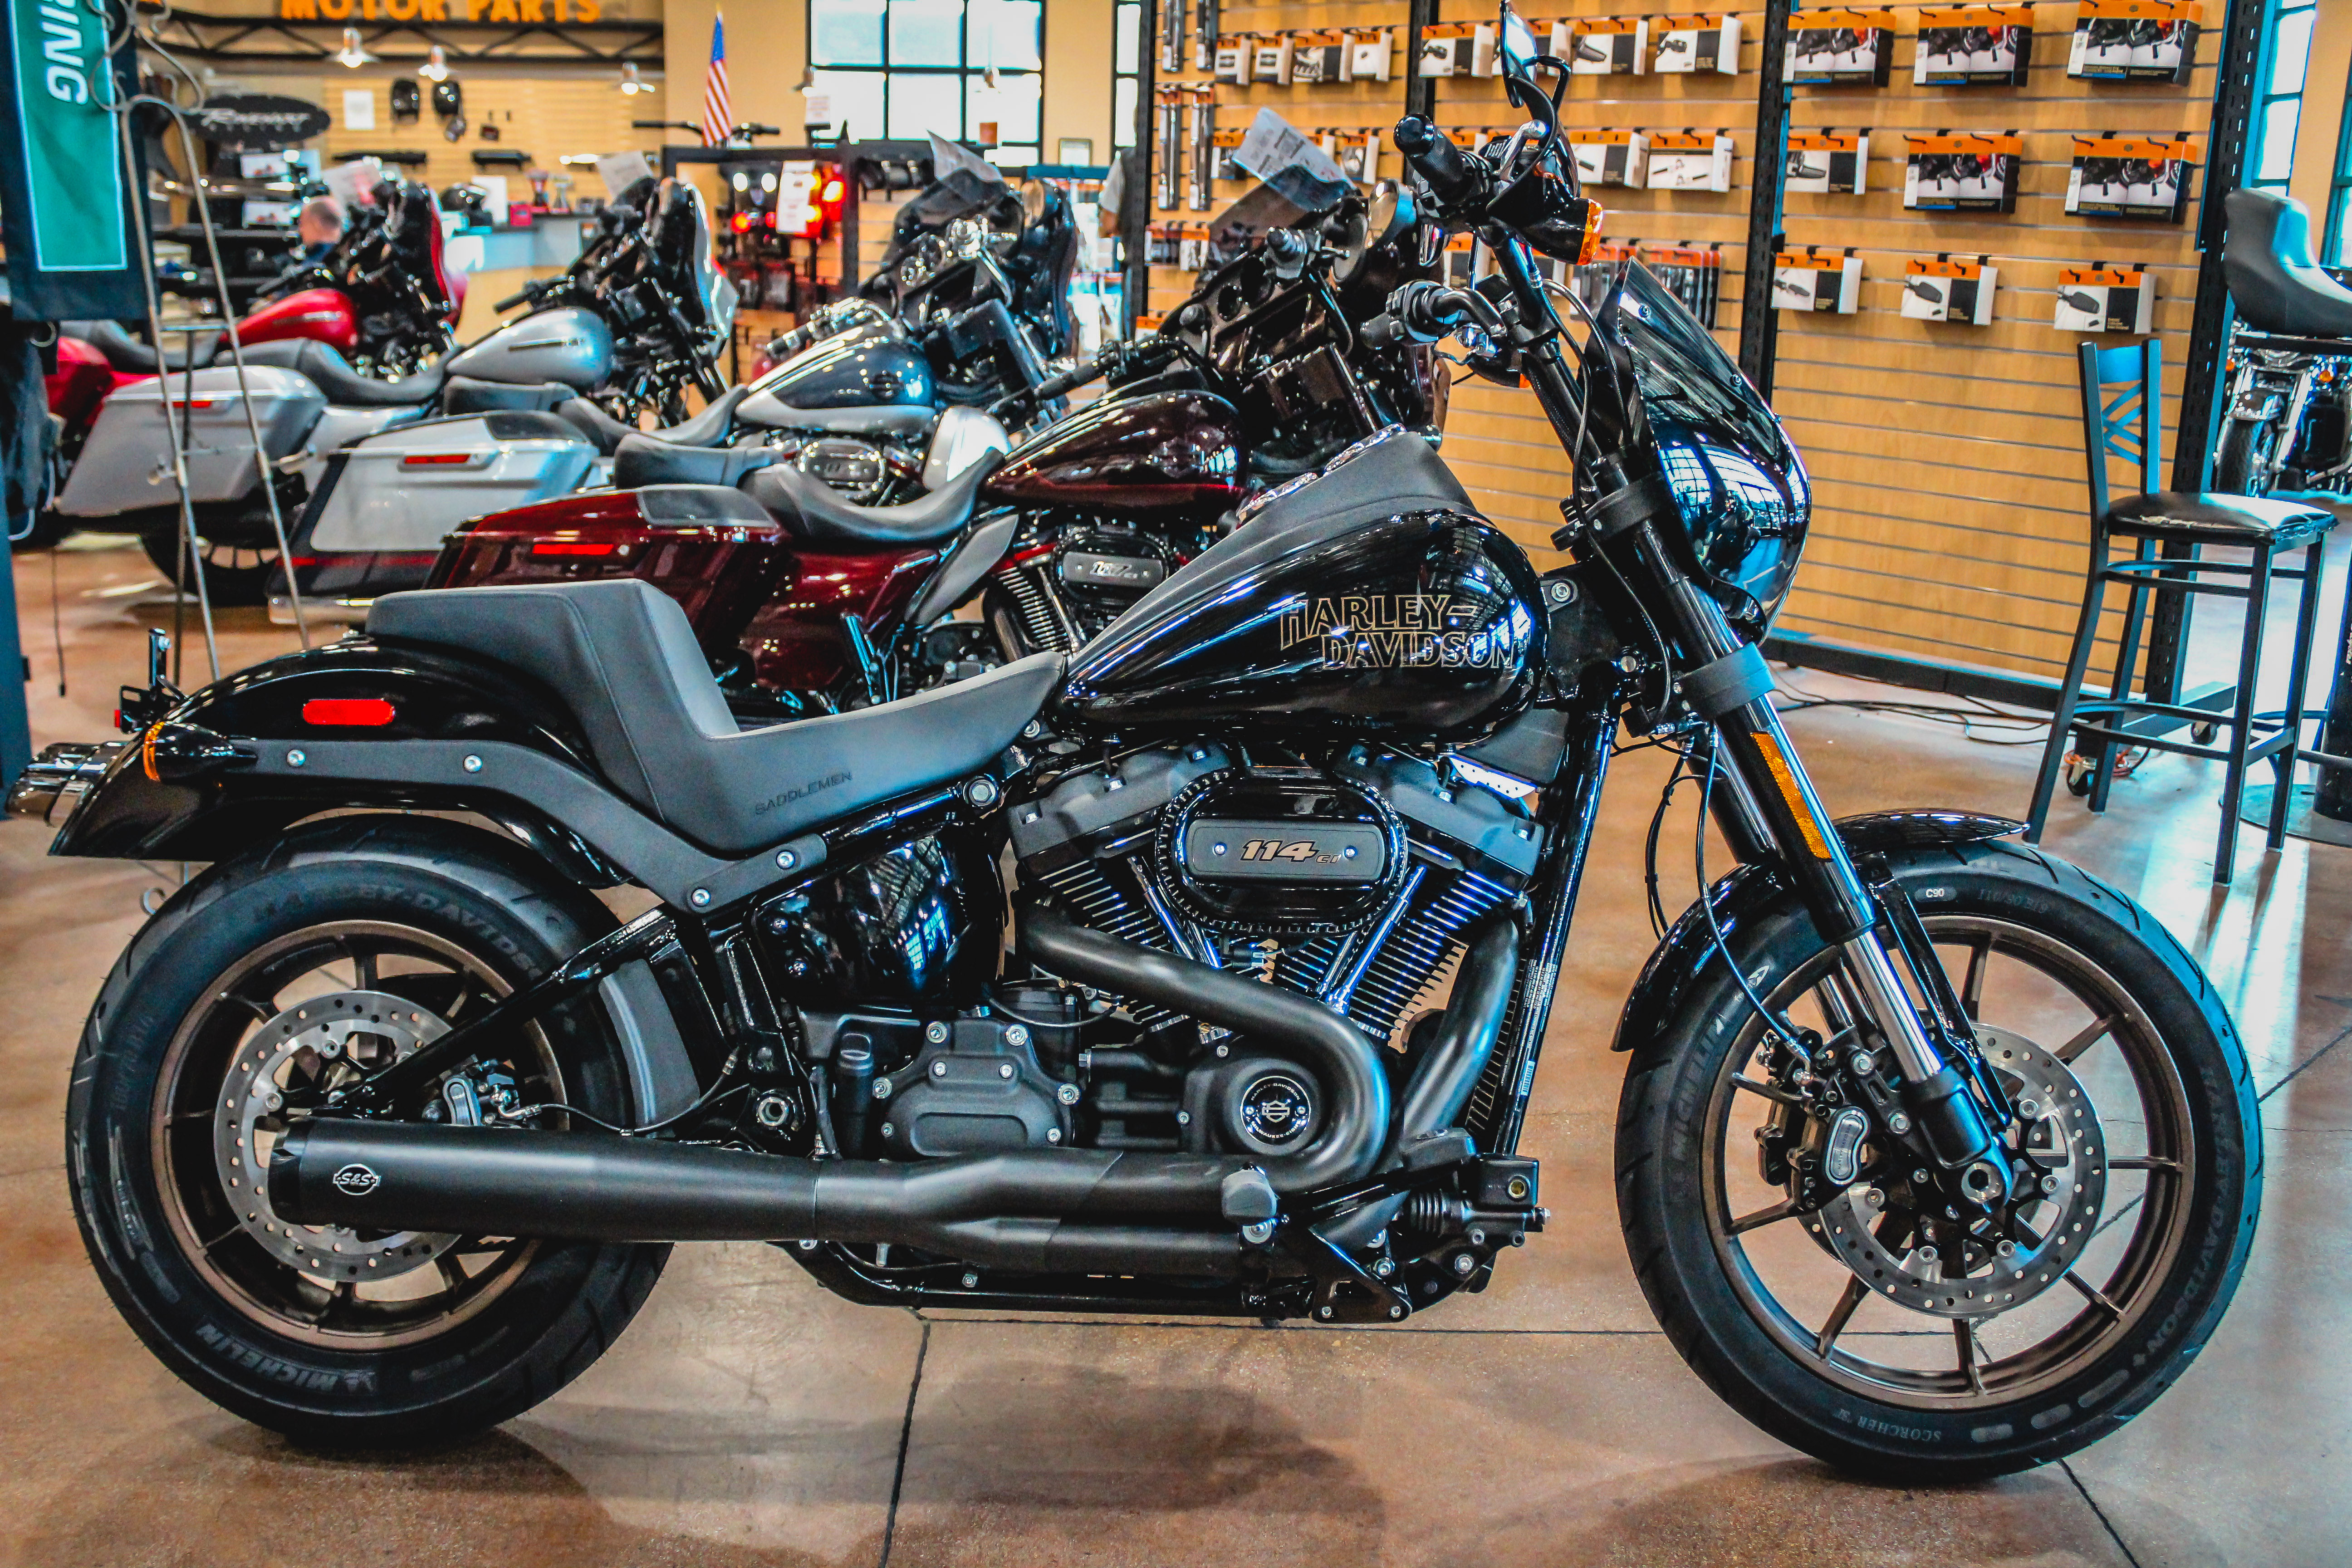 New 2020 Harley-Davidson Low Rider S in El Cajon #D026556 | El Cajon